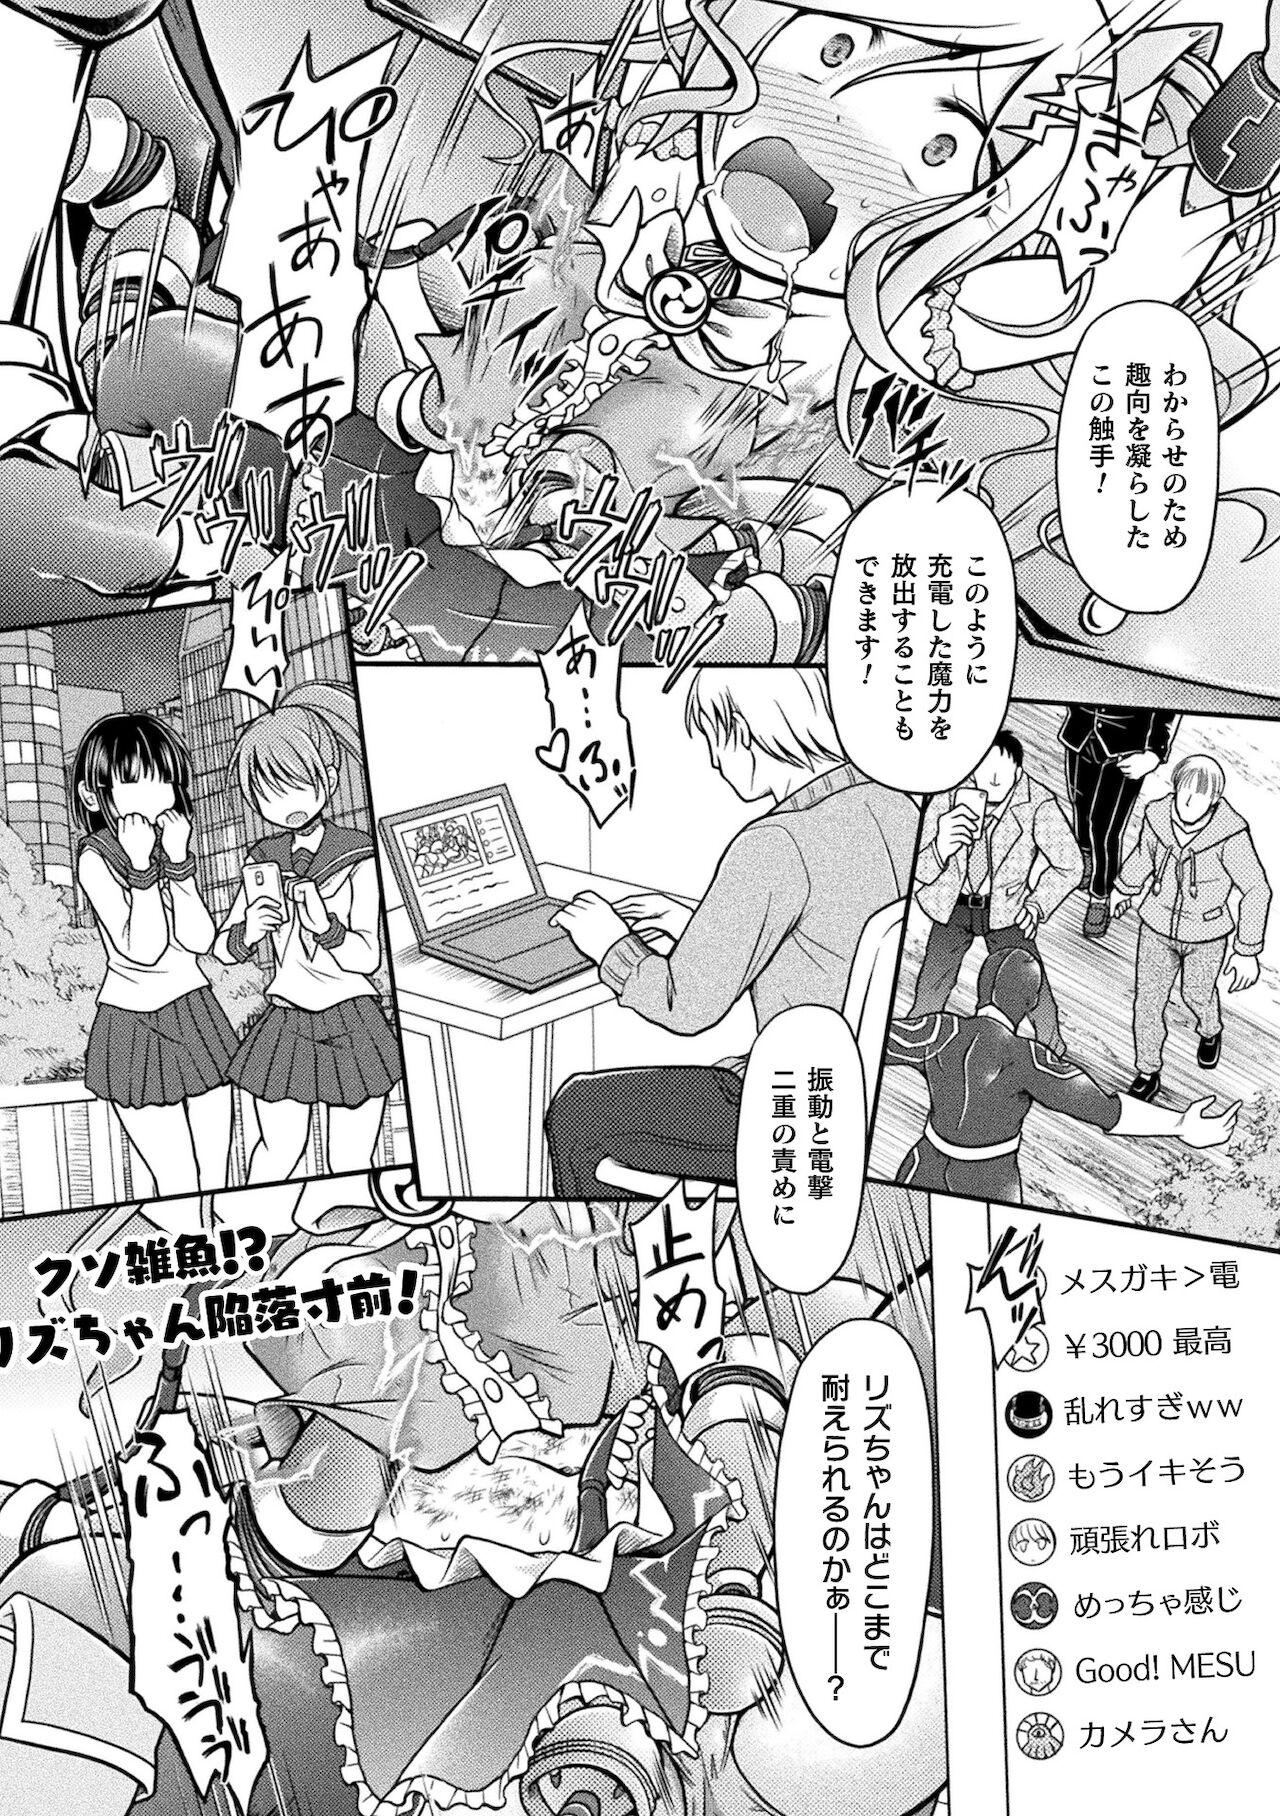 2D Comic Magazine Mesugaki Henshin Heroine Kikaikan Seisai Hijou no Wakarase Machine de Renzoku Loli Acme Vol. 2 31